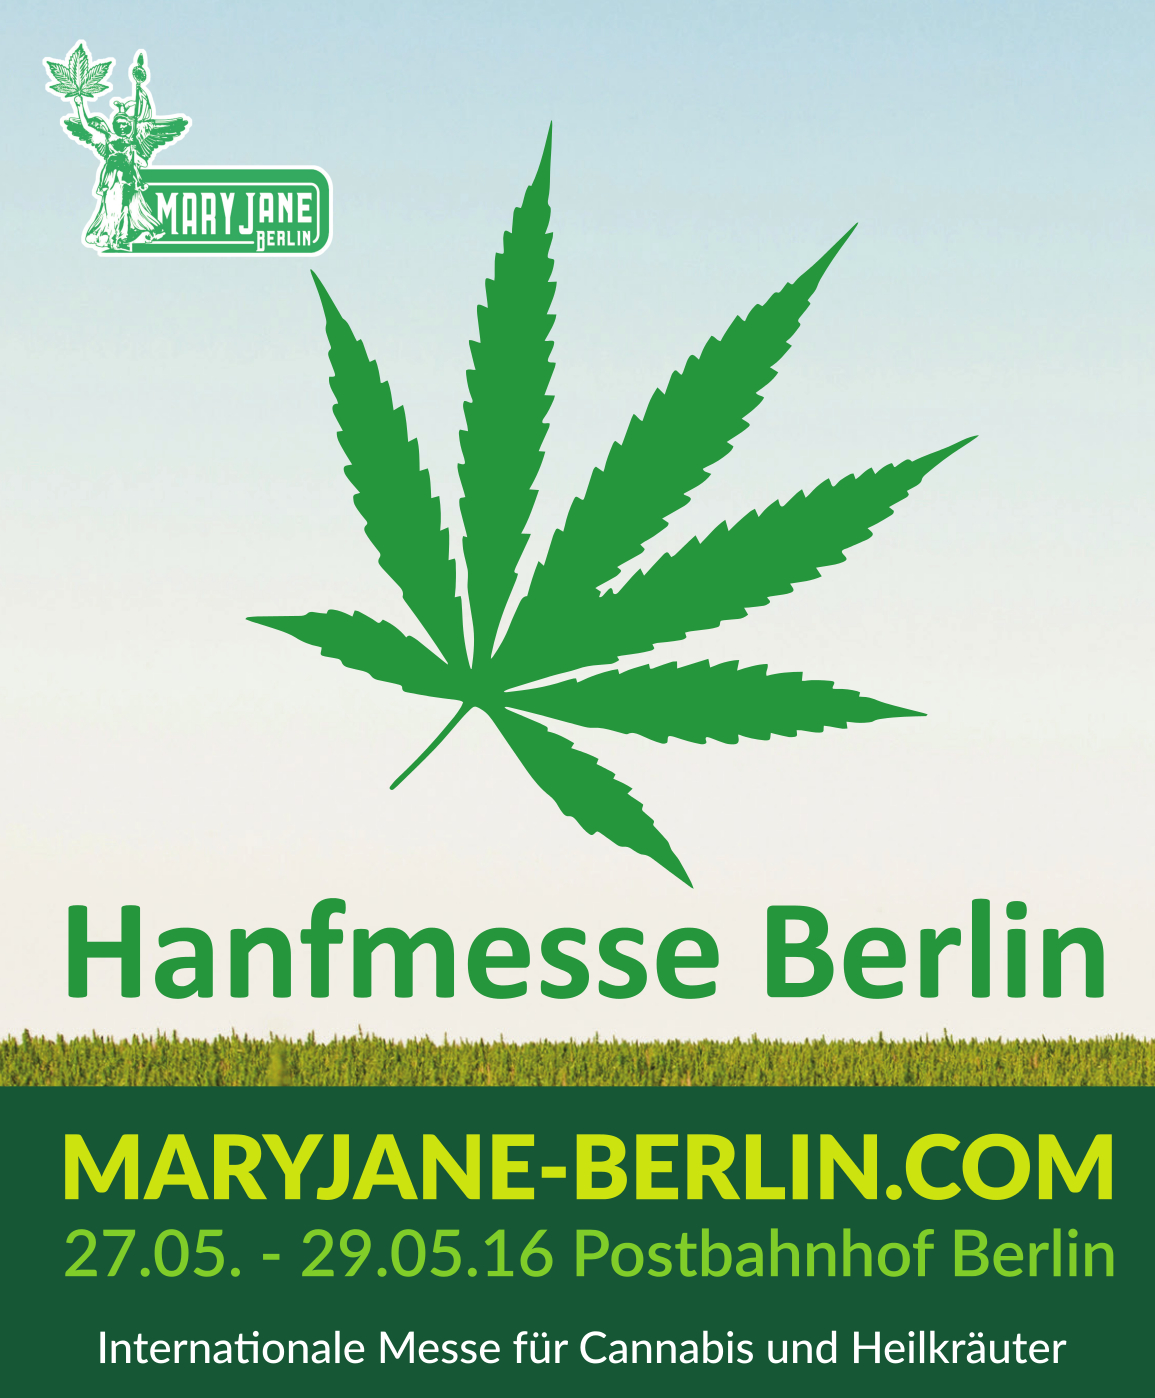 Mary Jane Berlin – Große Hanfmesse in der Hauptstadt